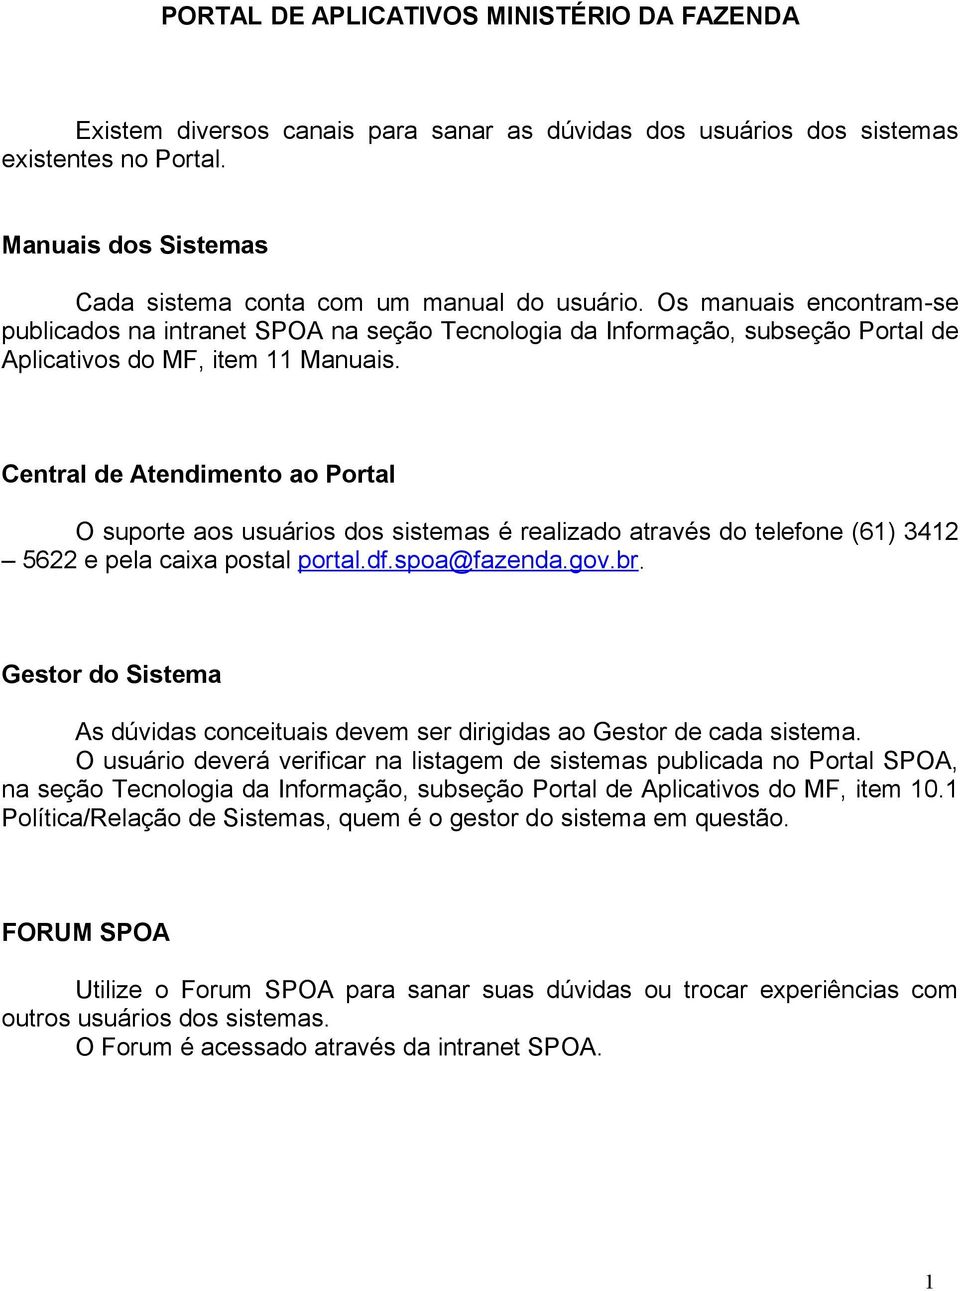 Os manuais encontram-se publicados na intranet SPOA na seção Tecnologia da Informação, subseção Portal de Aplicativos do MF, item 11 Manuais.